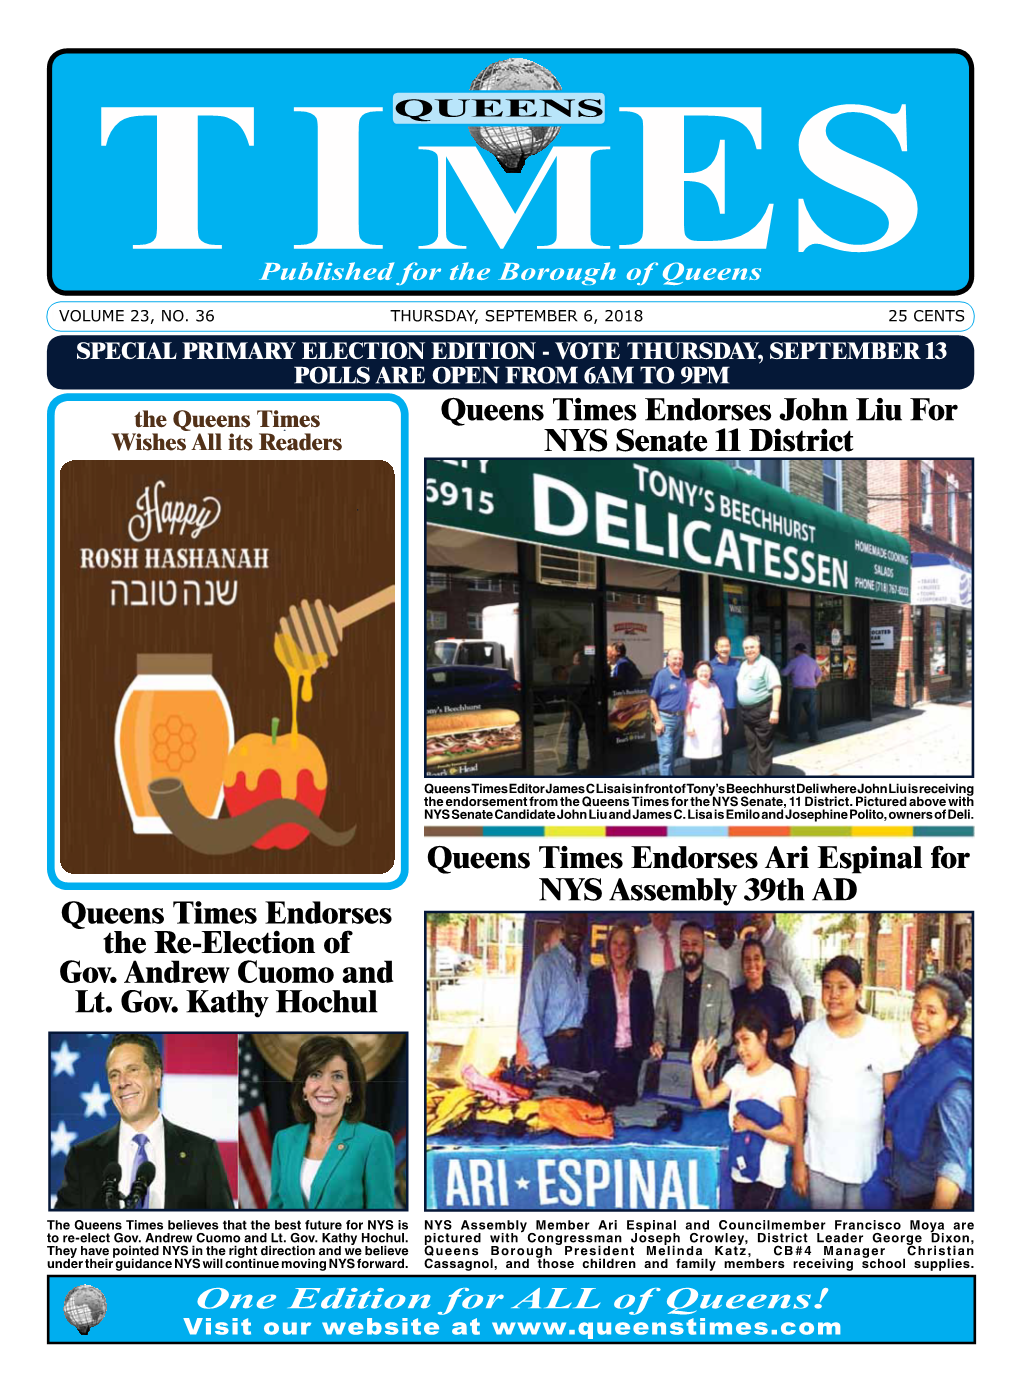 Queens Times Endorses Ari Espinal for NYS Assembly 39Th AD Queens Times Endorses the Re-Election of Gov